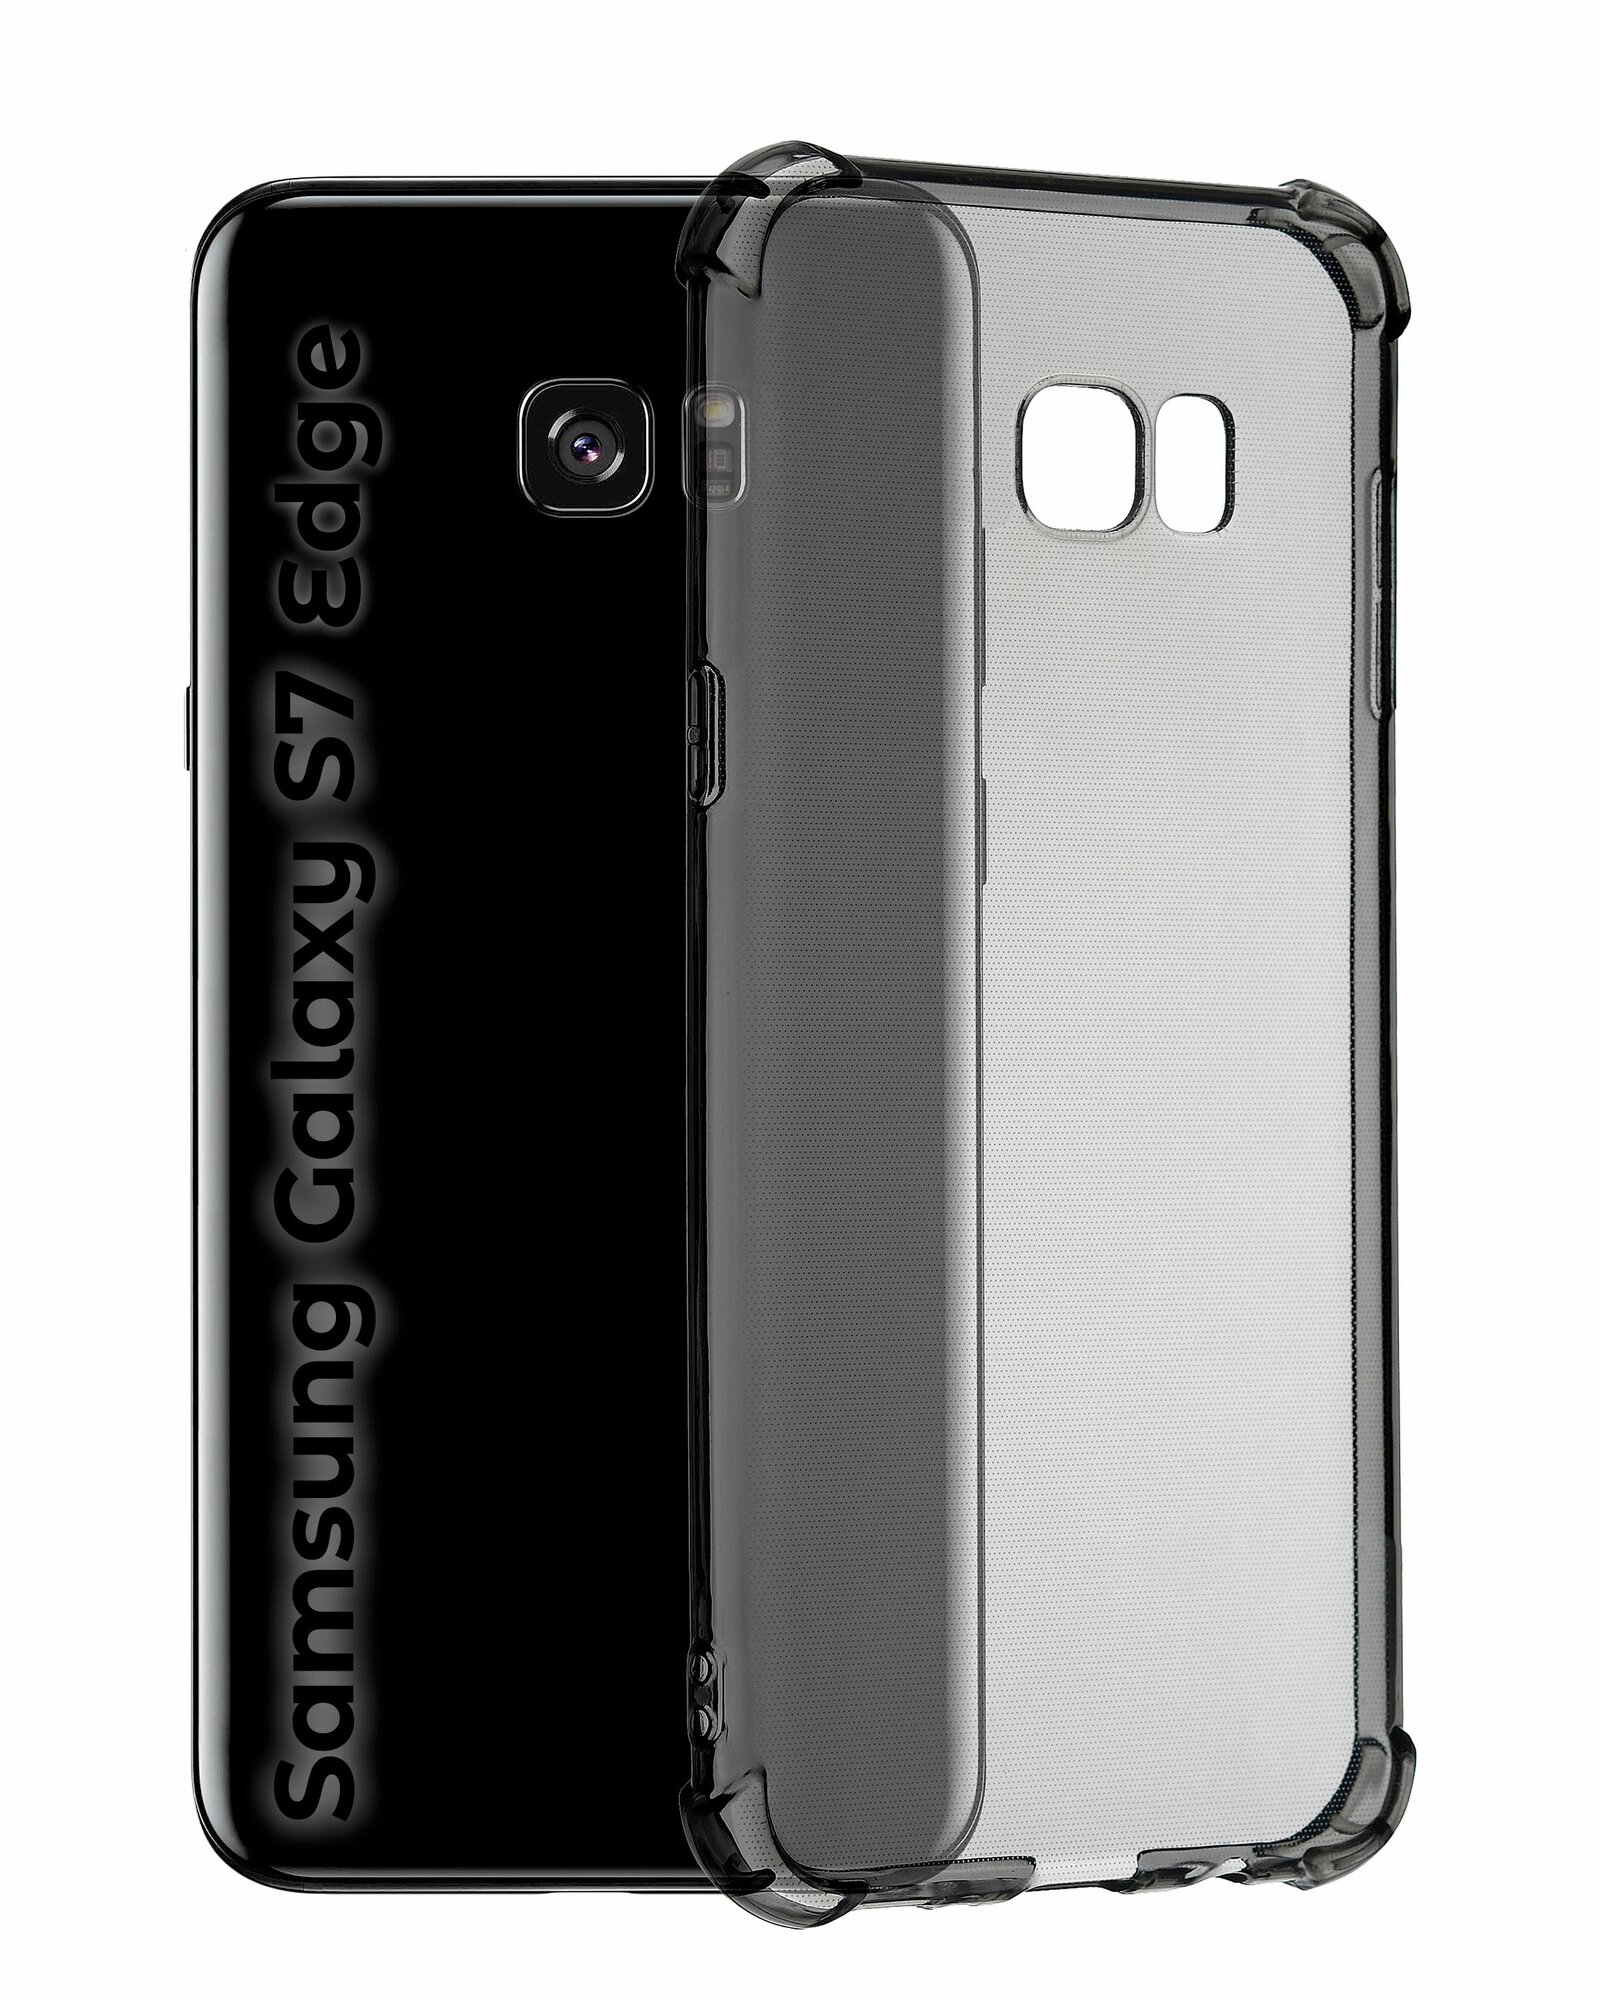 Чехол для смартфона Samsung Galaxy S7 Edge силиконовый прозрачный противоударный